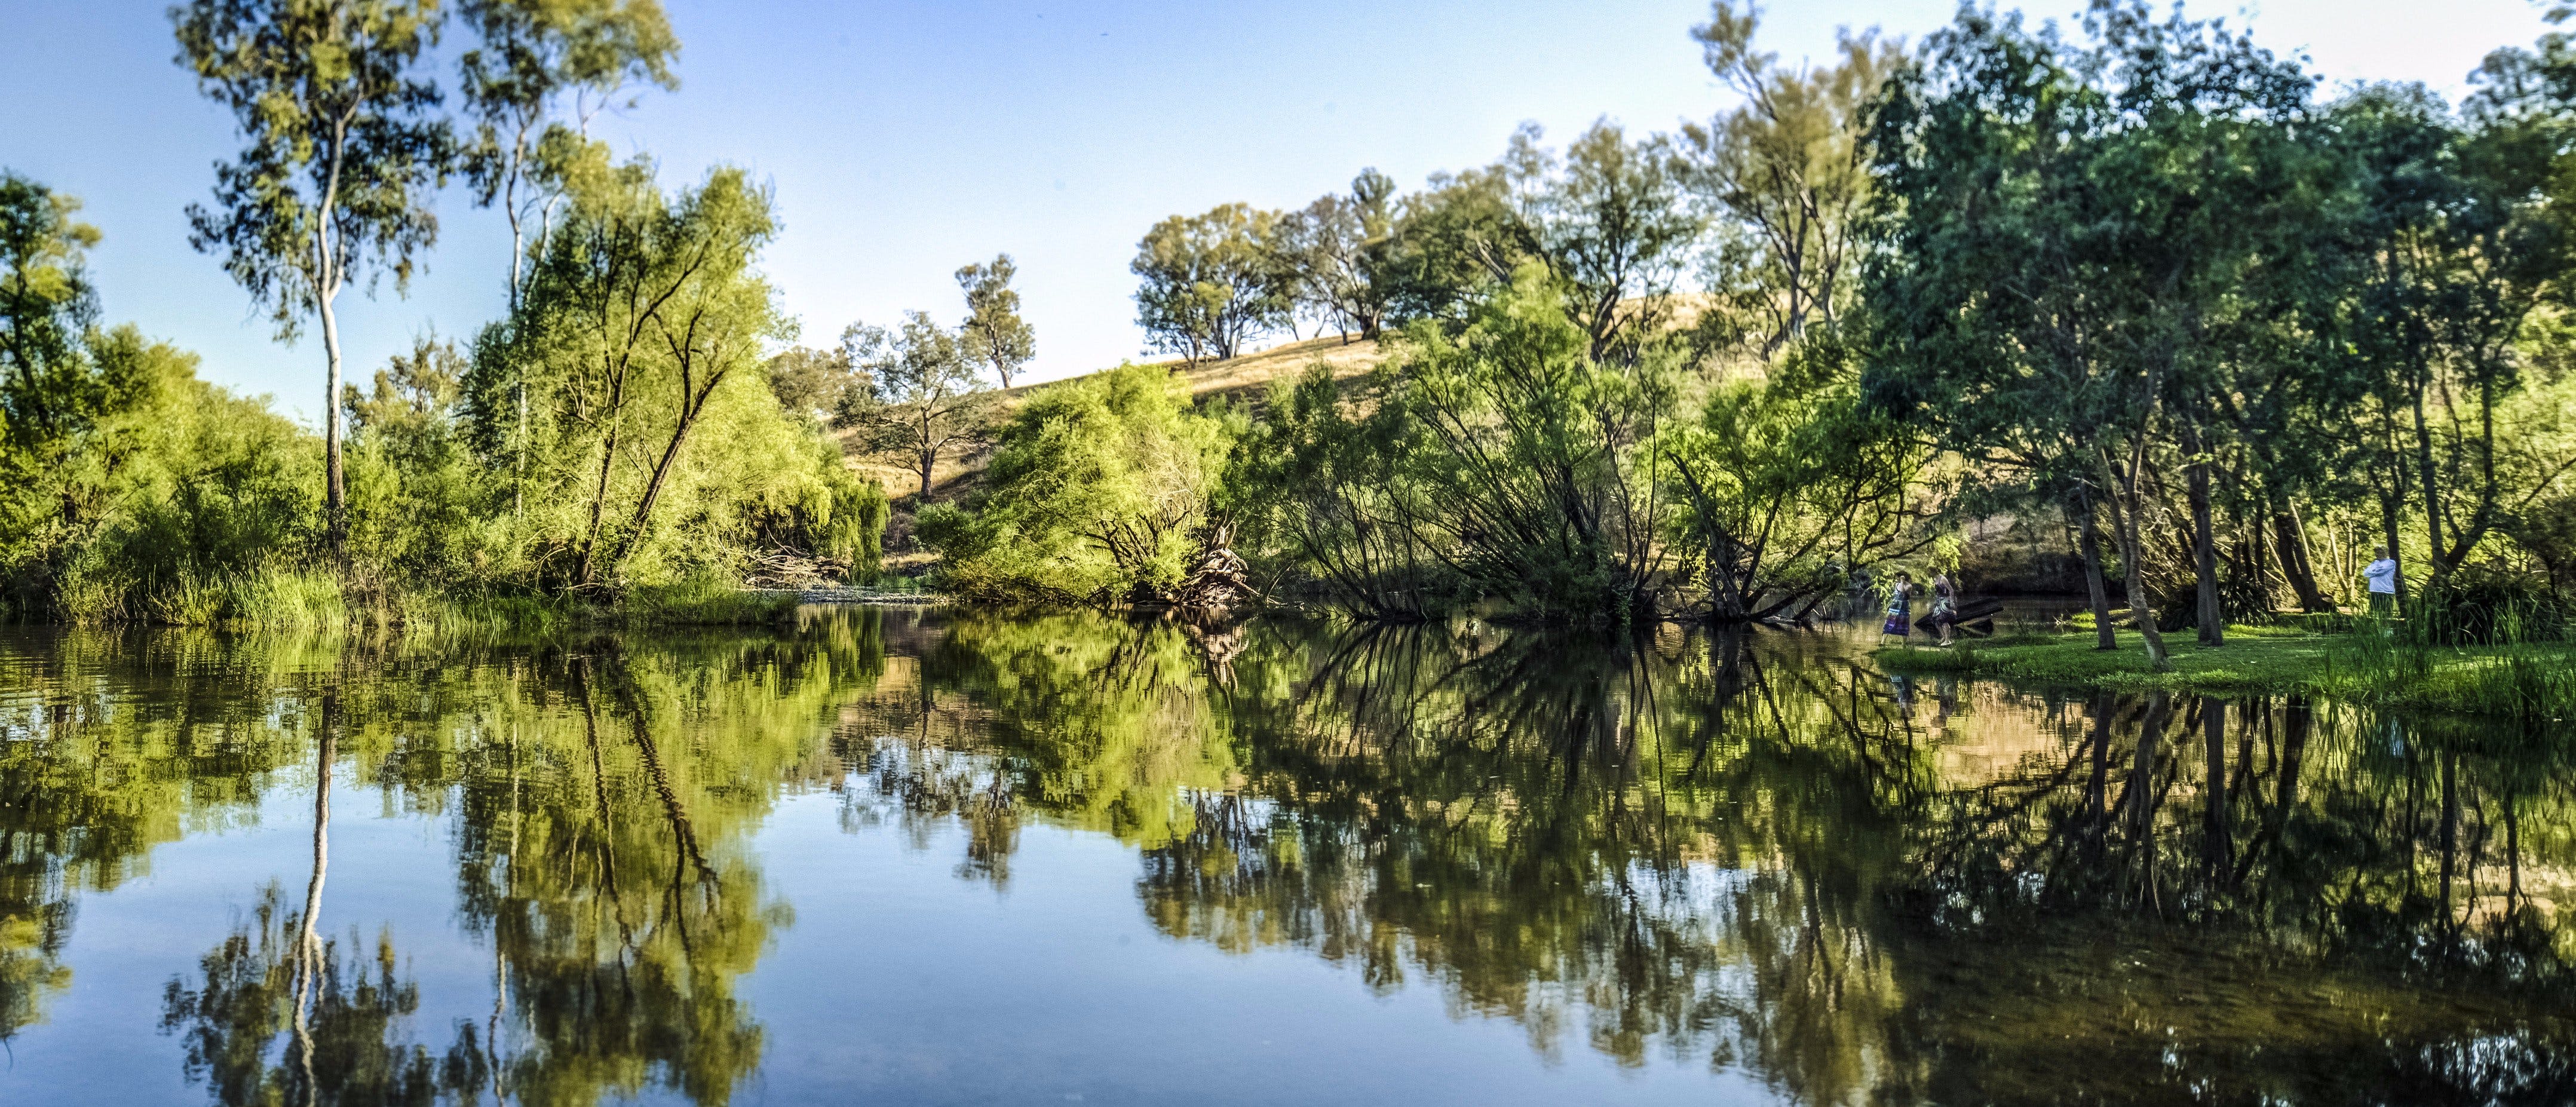 Tumut River Walk - Tourism Adelaide